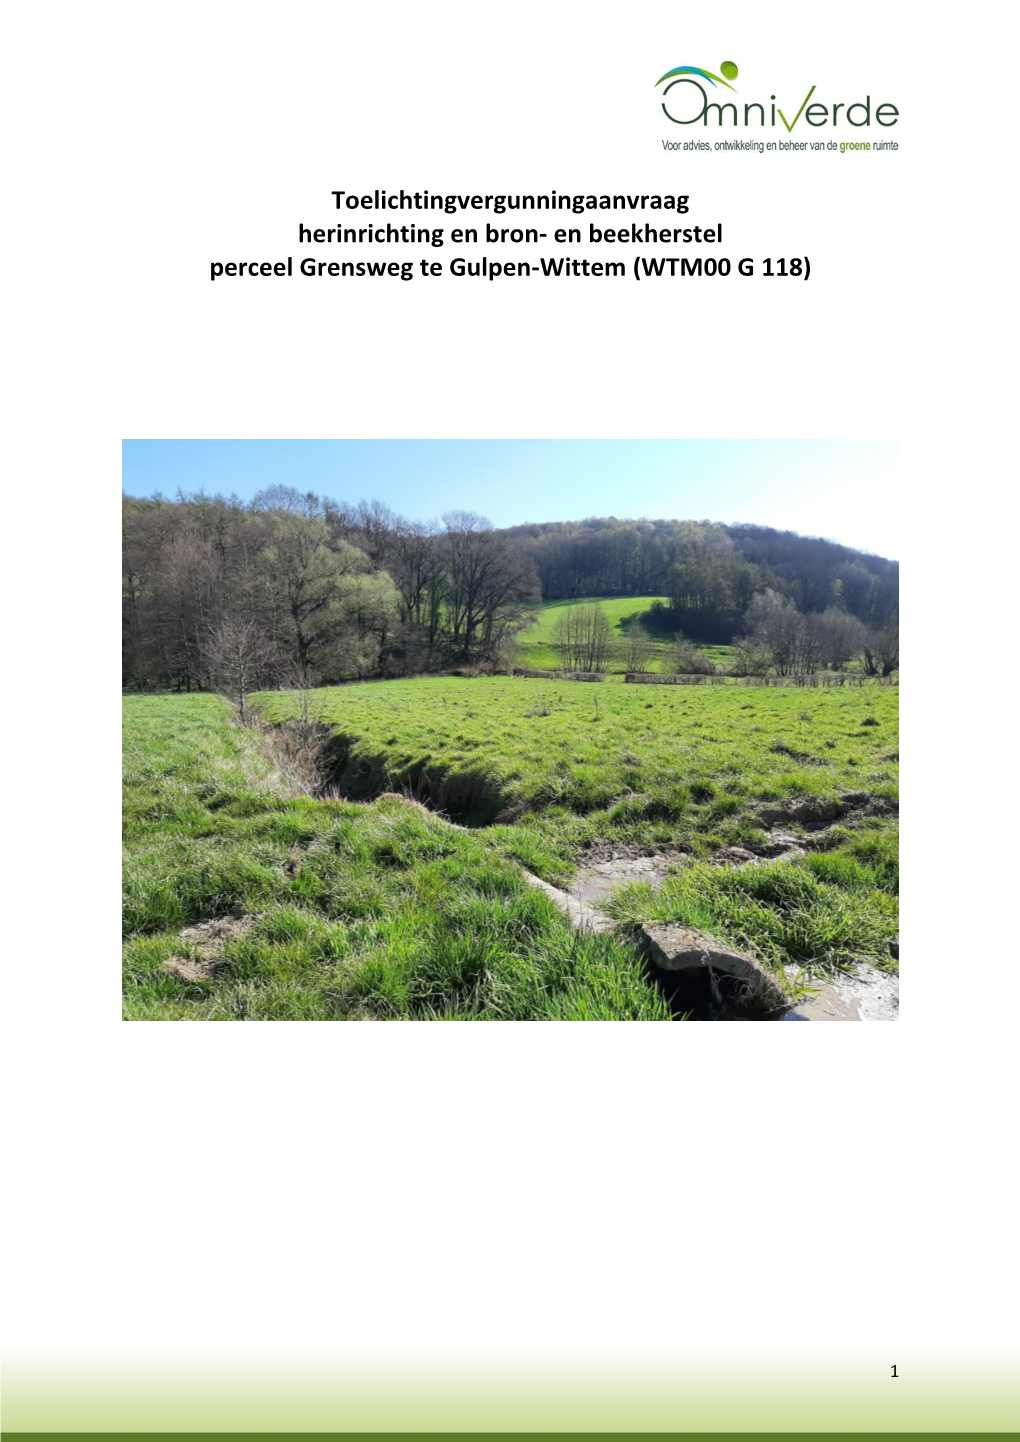 Toelichtingvergunningaanvraag Herinrichting En Bron- En Beekherstel Perceel Grensweg Te Gulpen-Wittem (WTM00 G 118)